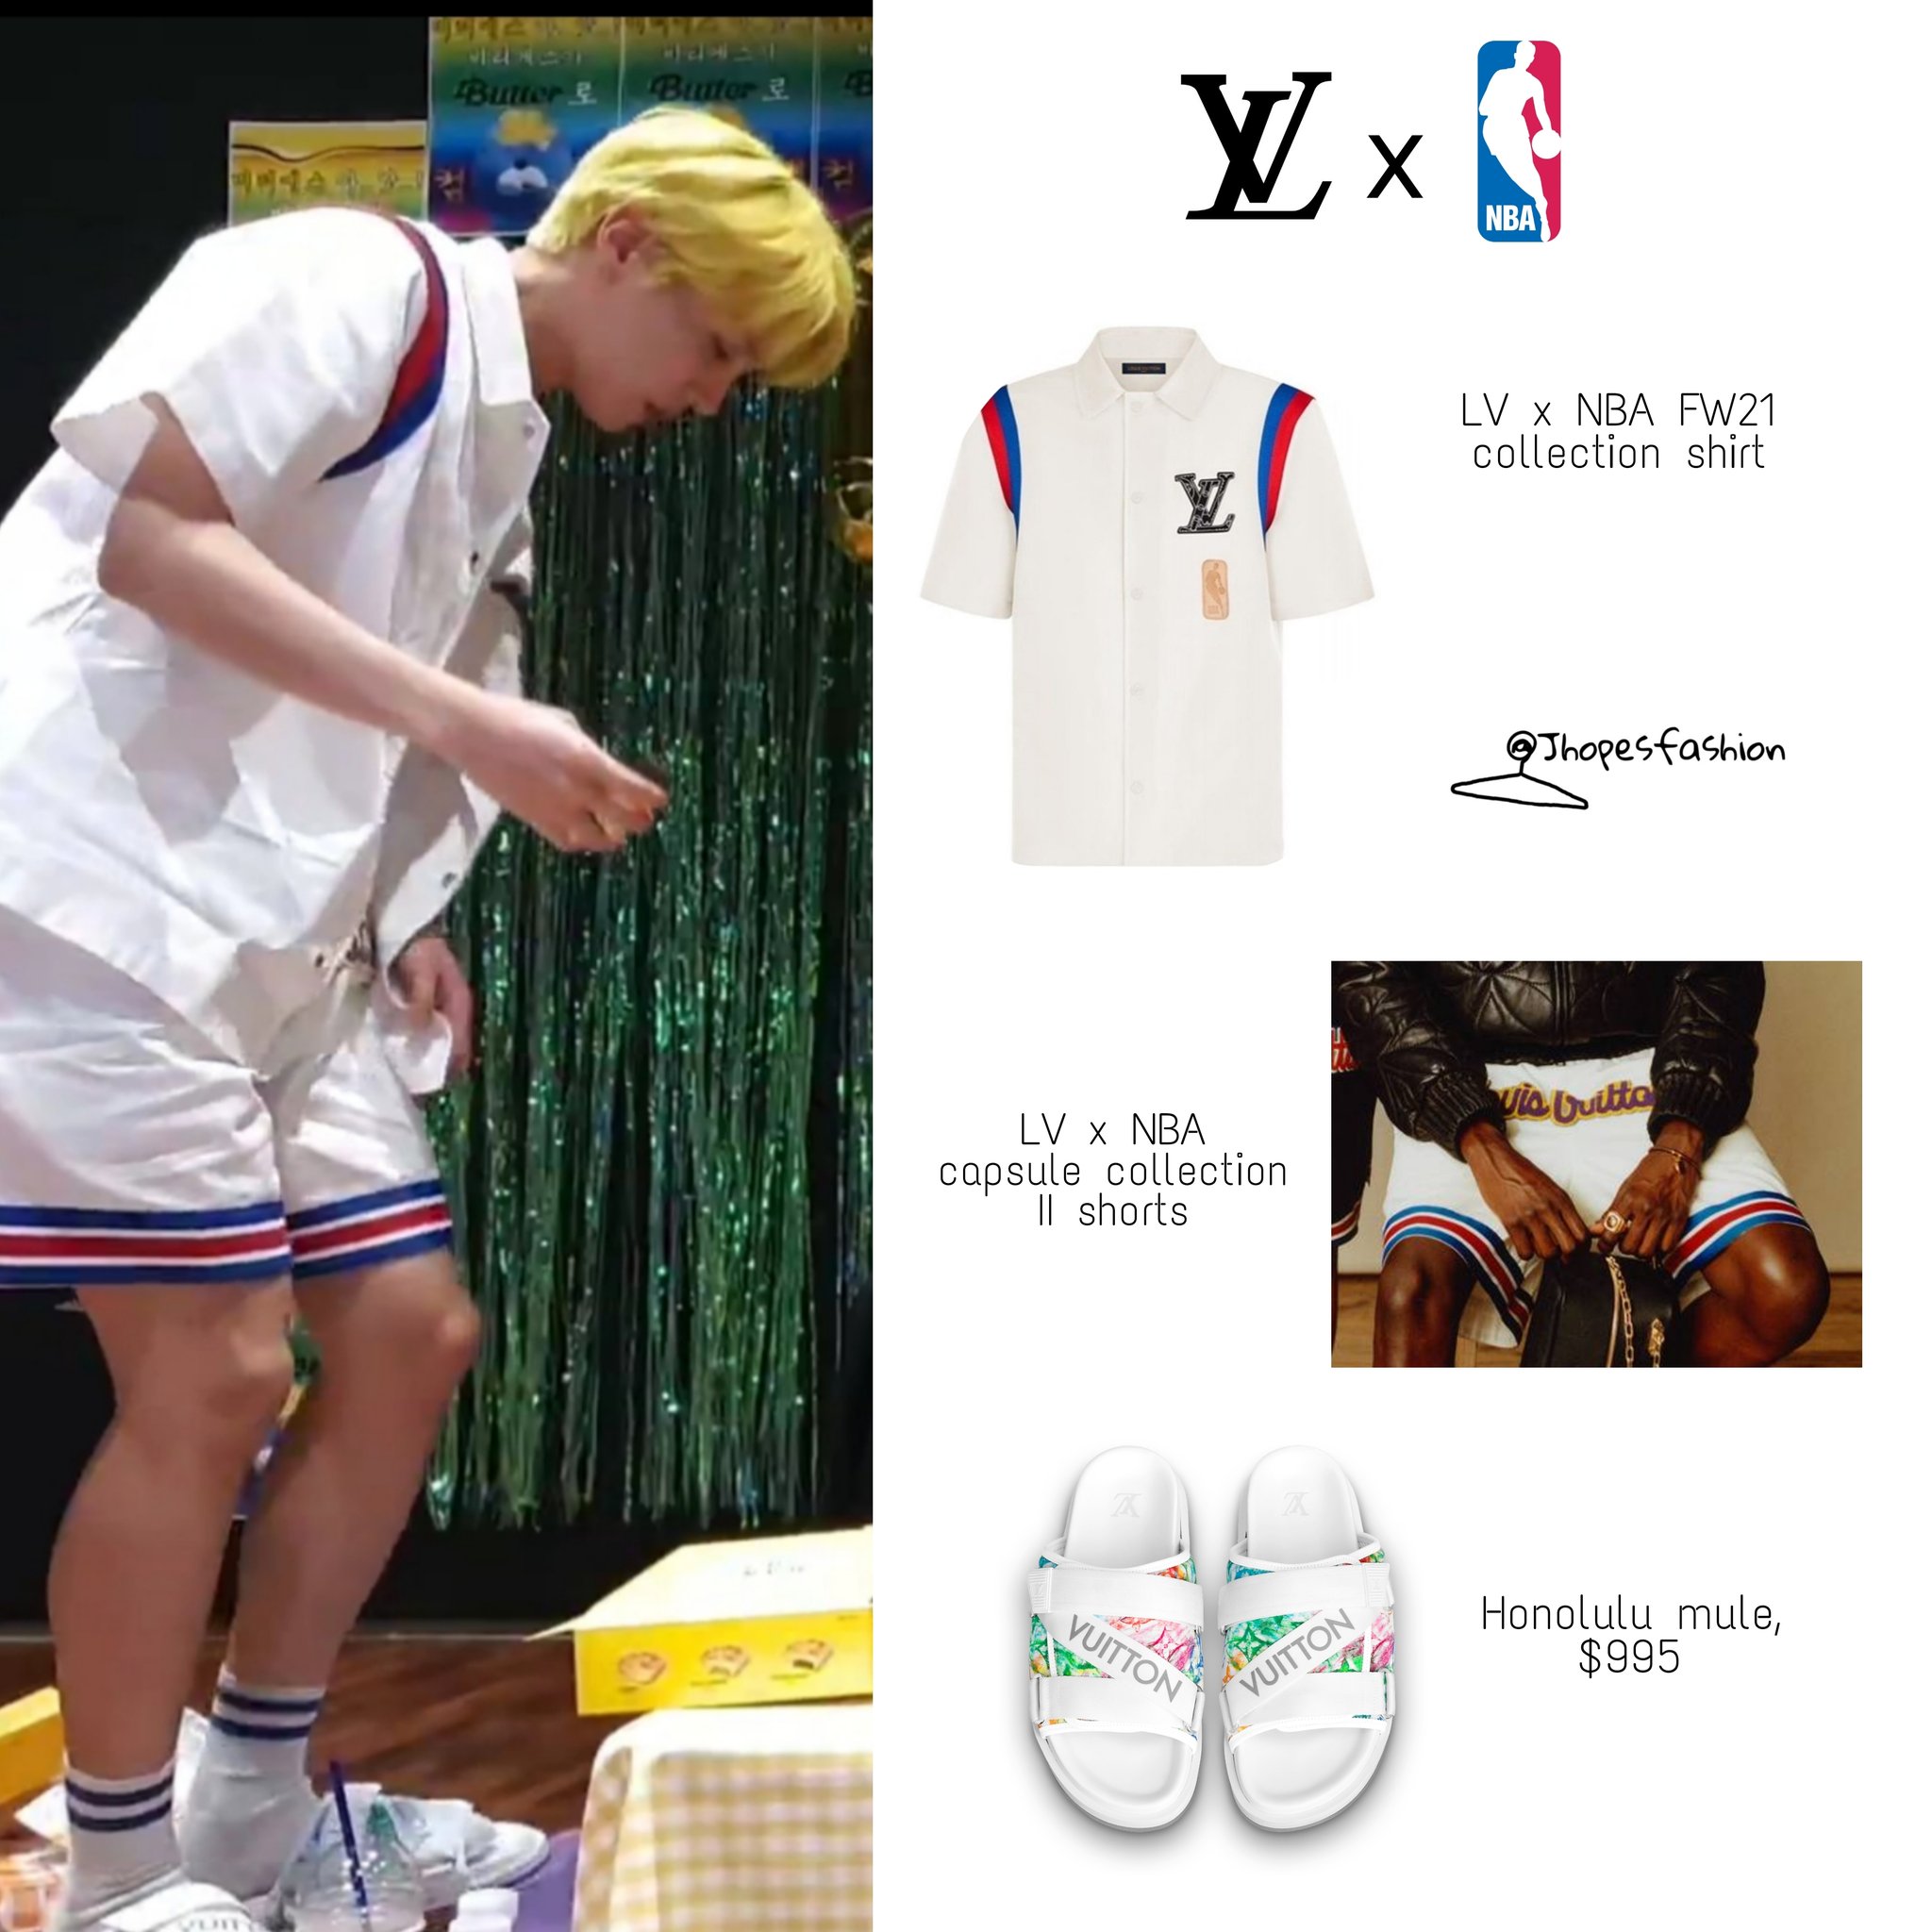 j-hope's closet (rest) on X: Hoseok's Louis Vuitton x NBA outfit and LV  bracelet & necklace 210526 - #BTSonLSSC #Jhope #제이홉 #Jhopefashion #BTS   / X